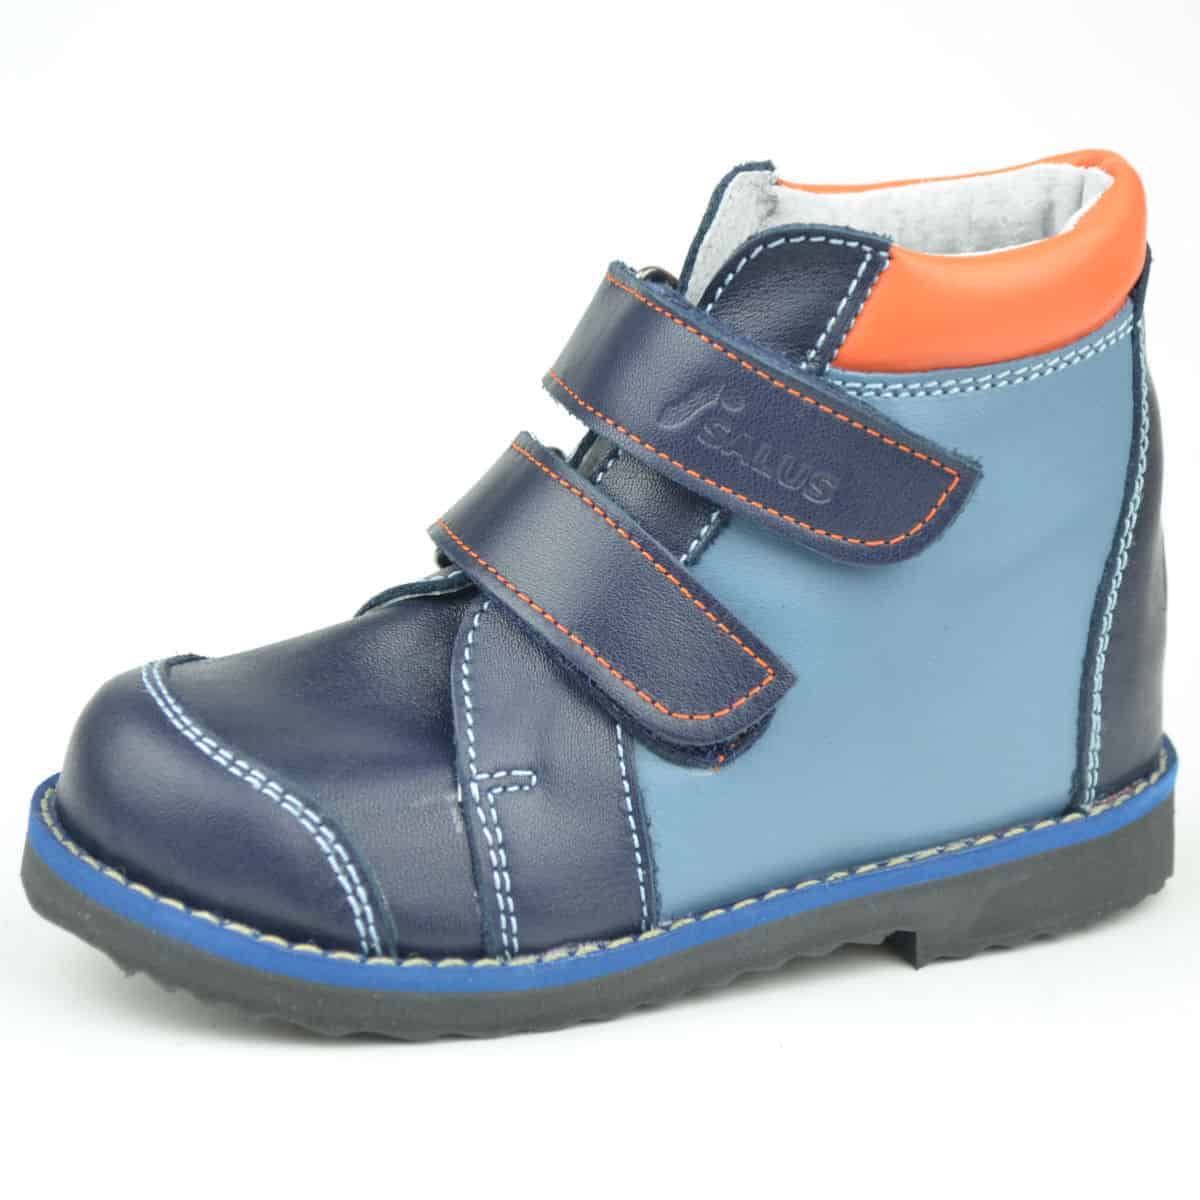 Flo-115  Salus cipő kék színben, fiús